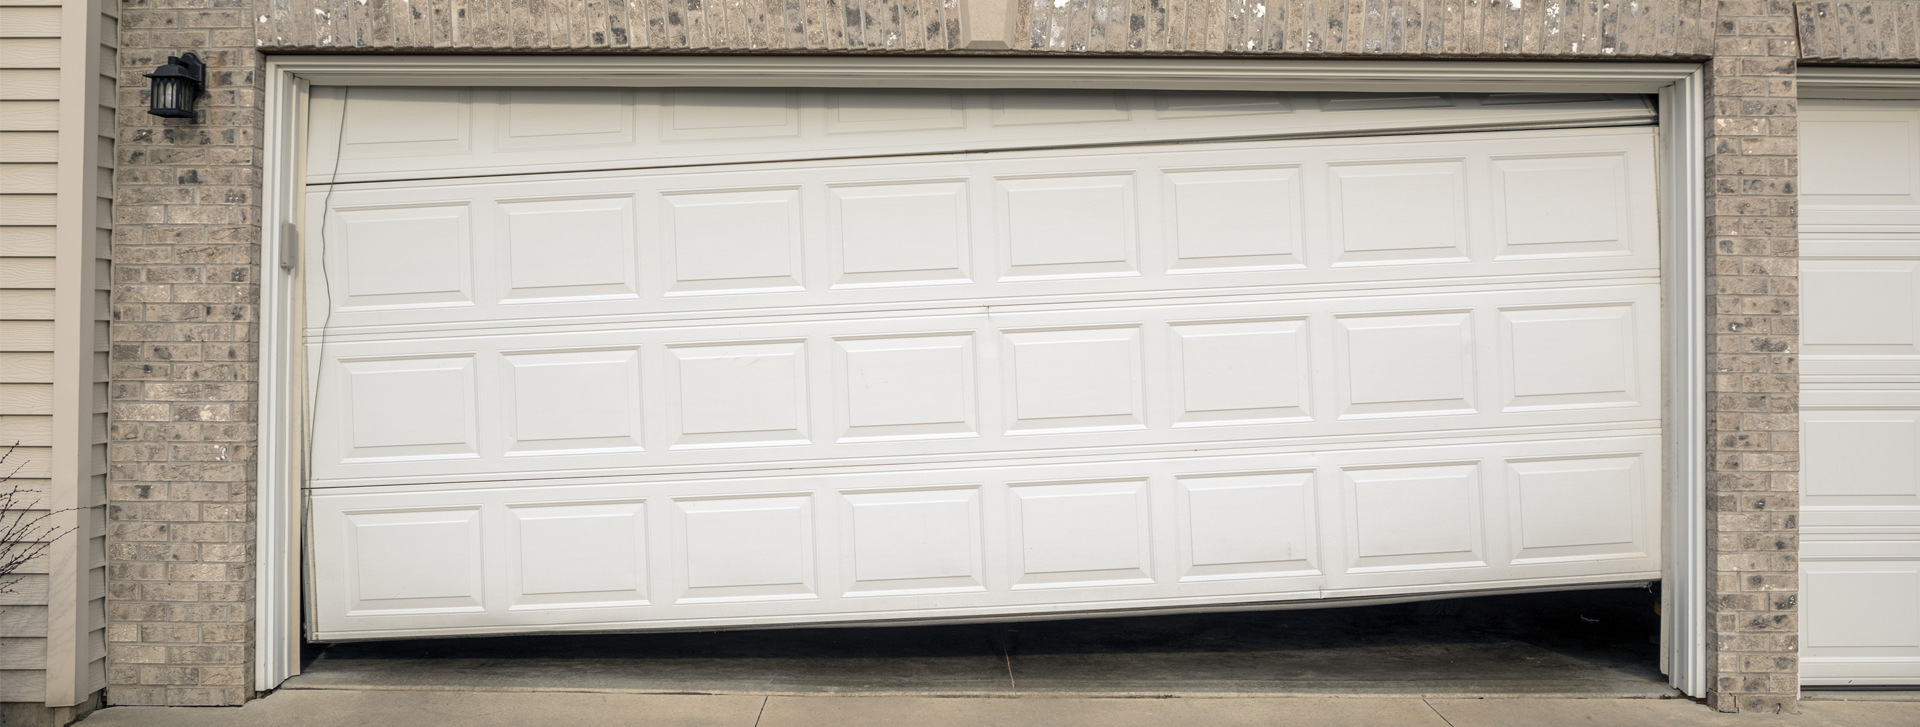 Why do garage door springs break?